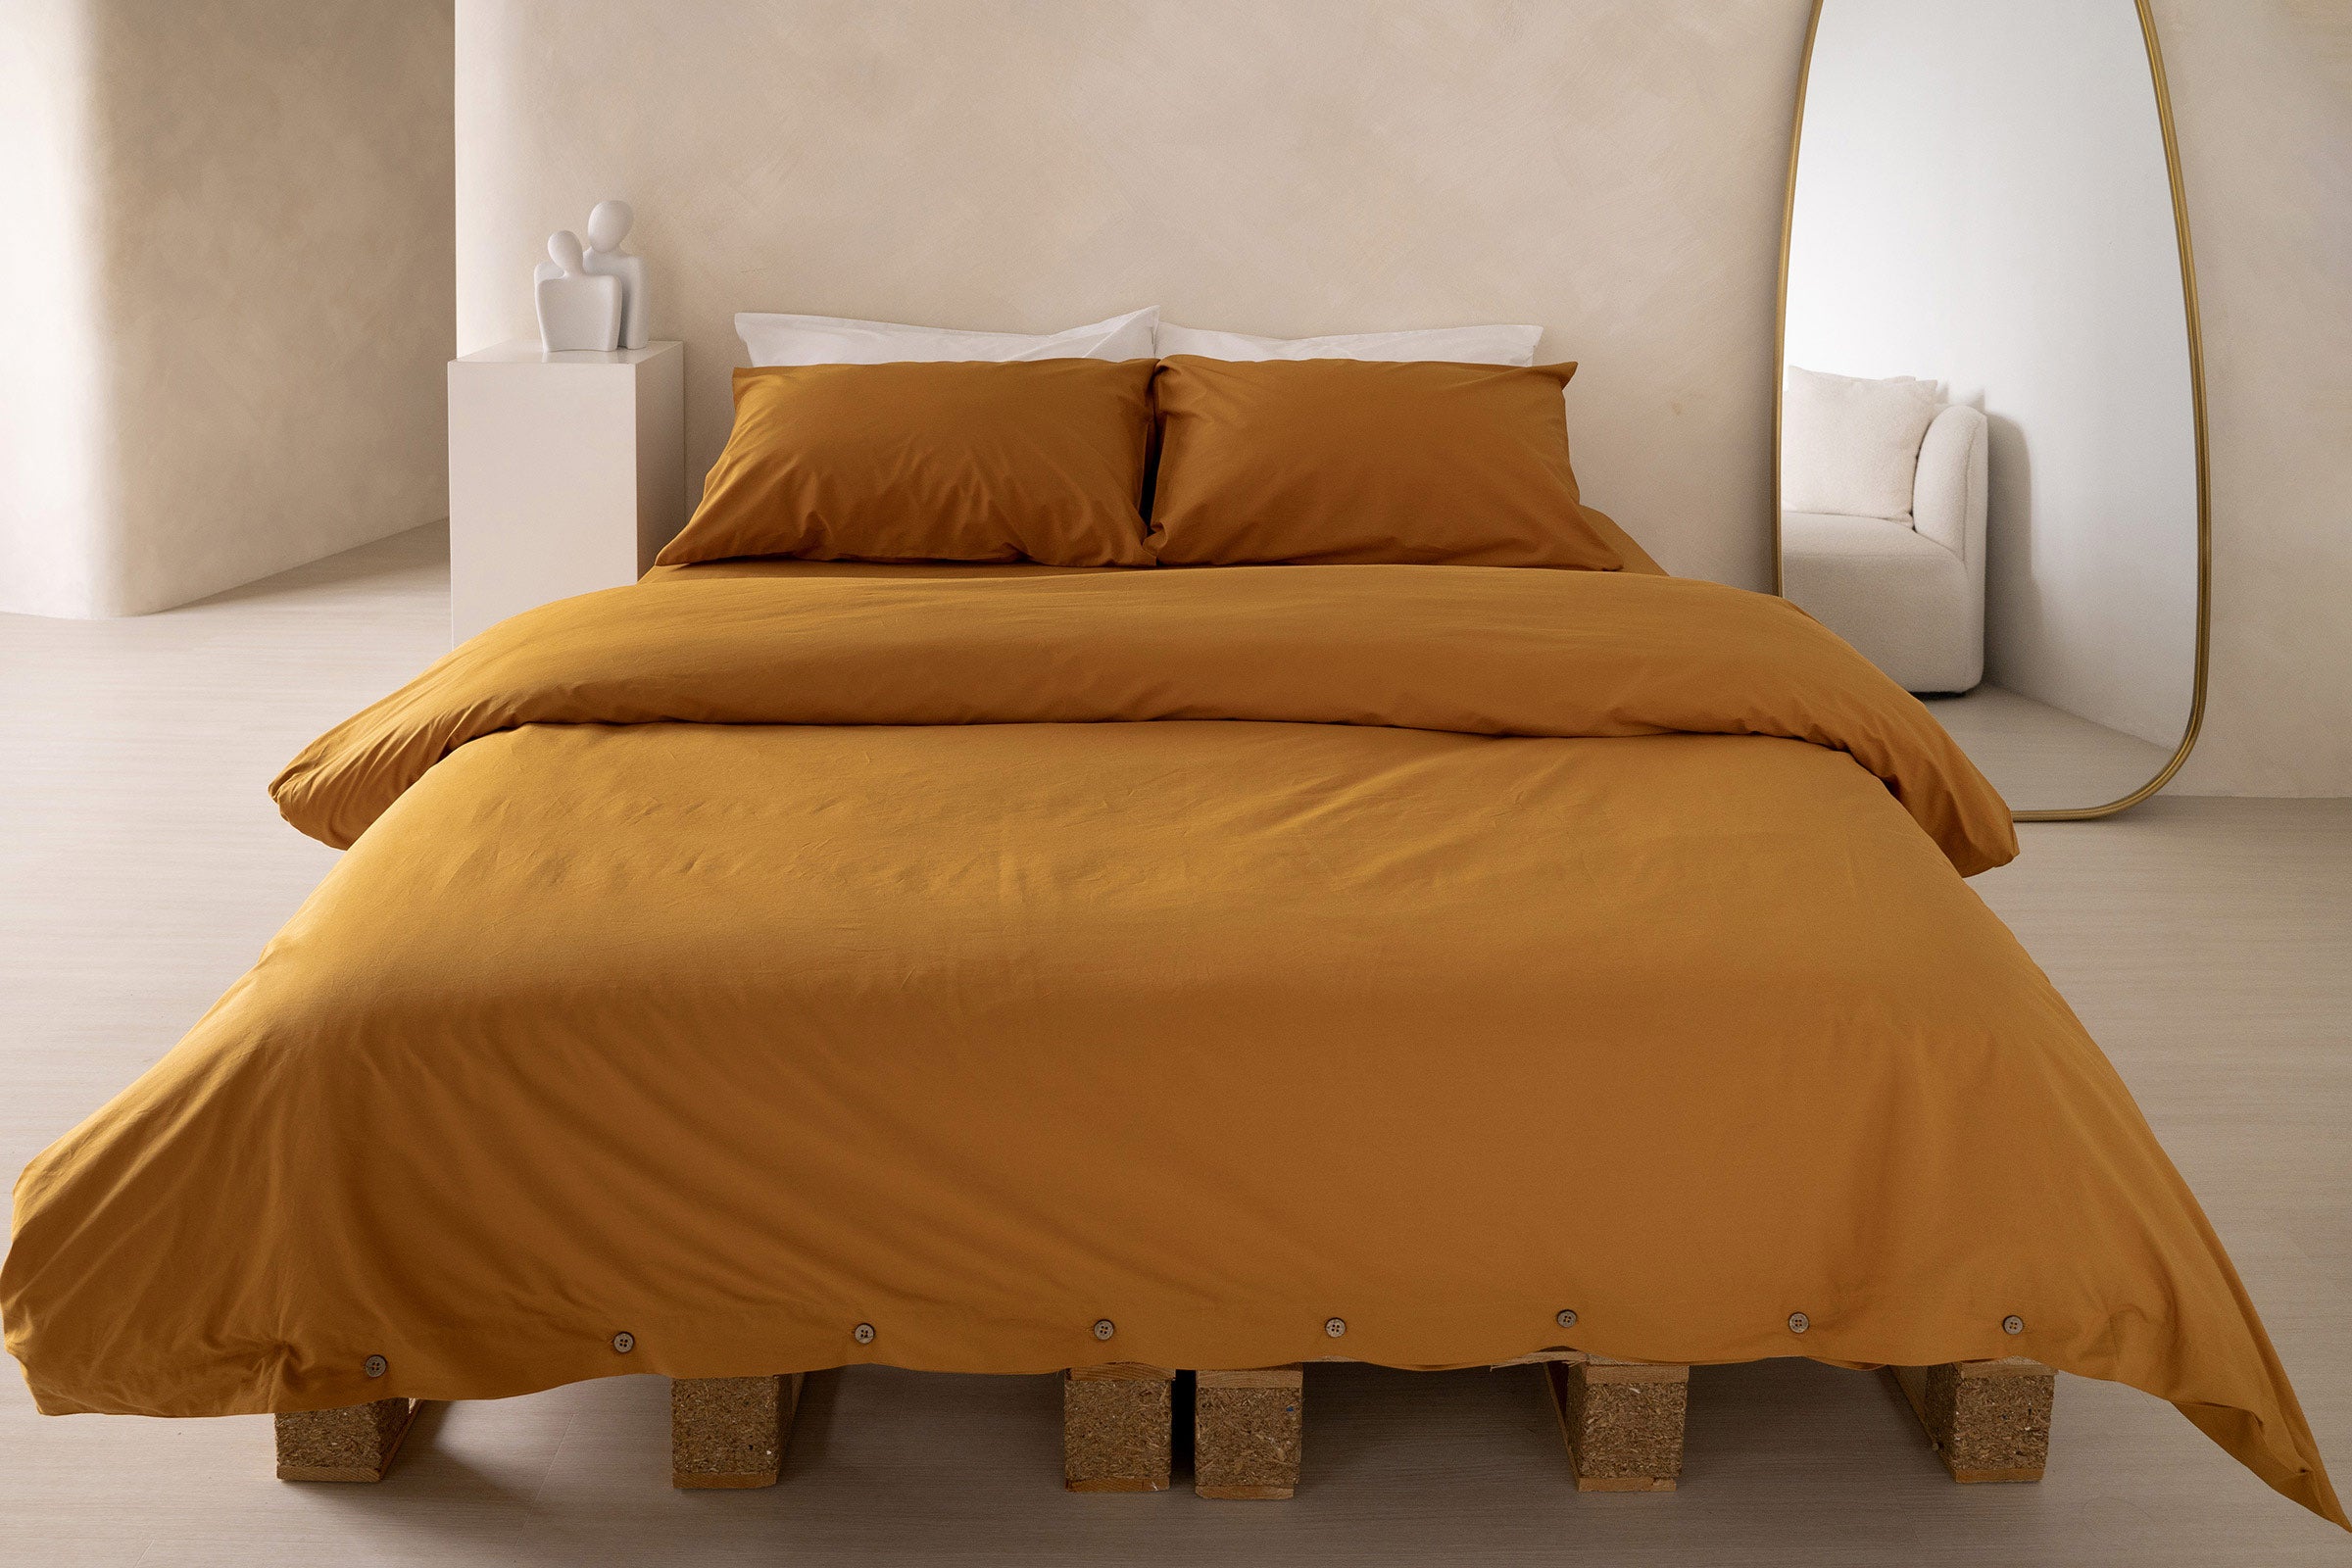 crisp-mustard-fitted-sheet-duvet-cover-pillowcase-pair-white-pillowcase-pair-by-sojao.jpg